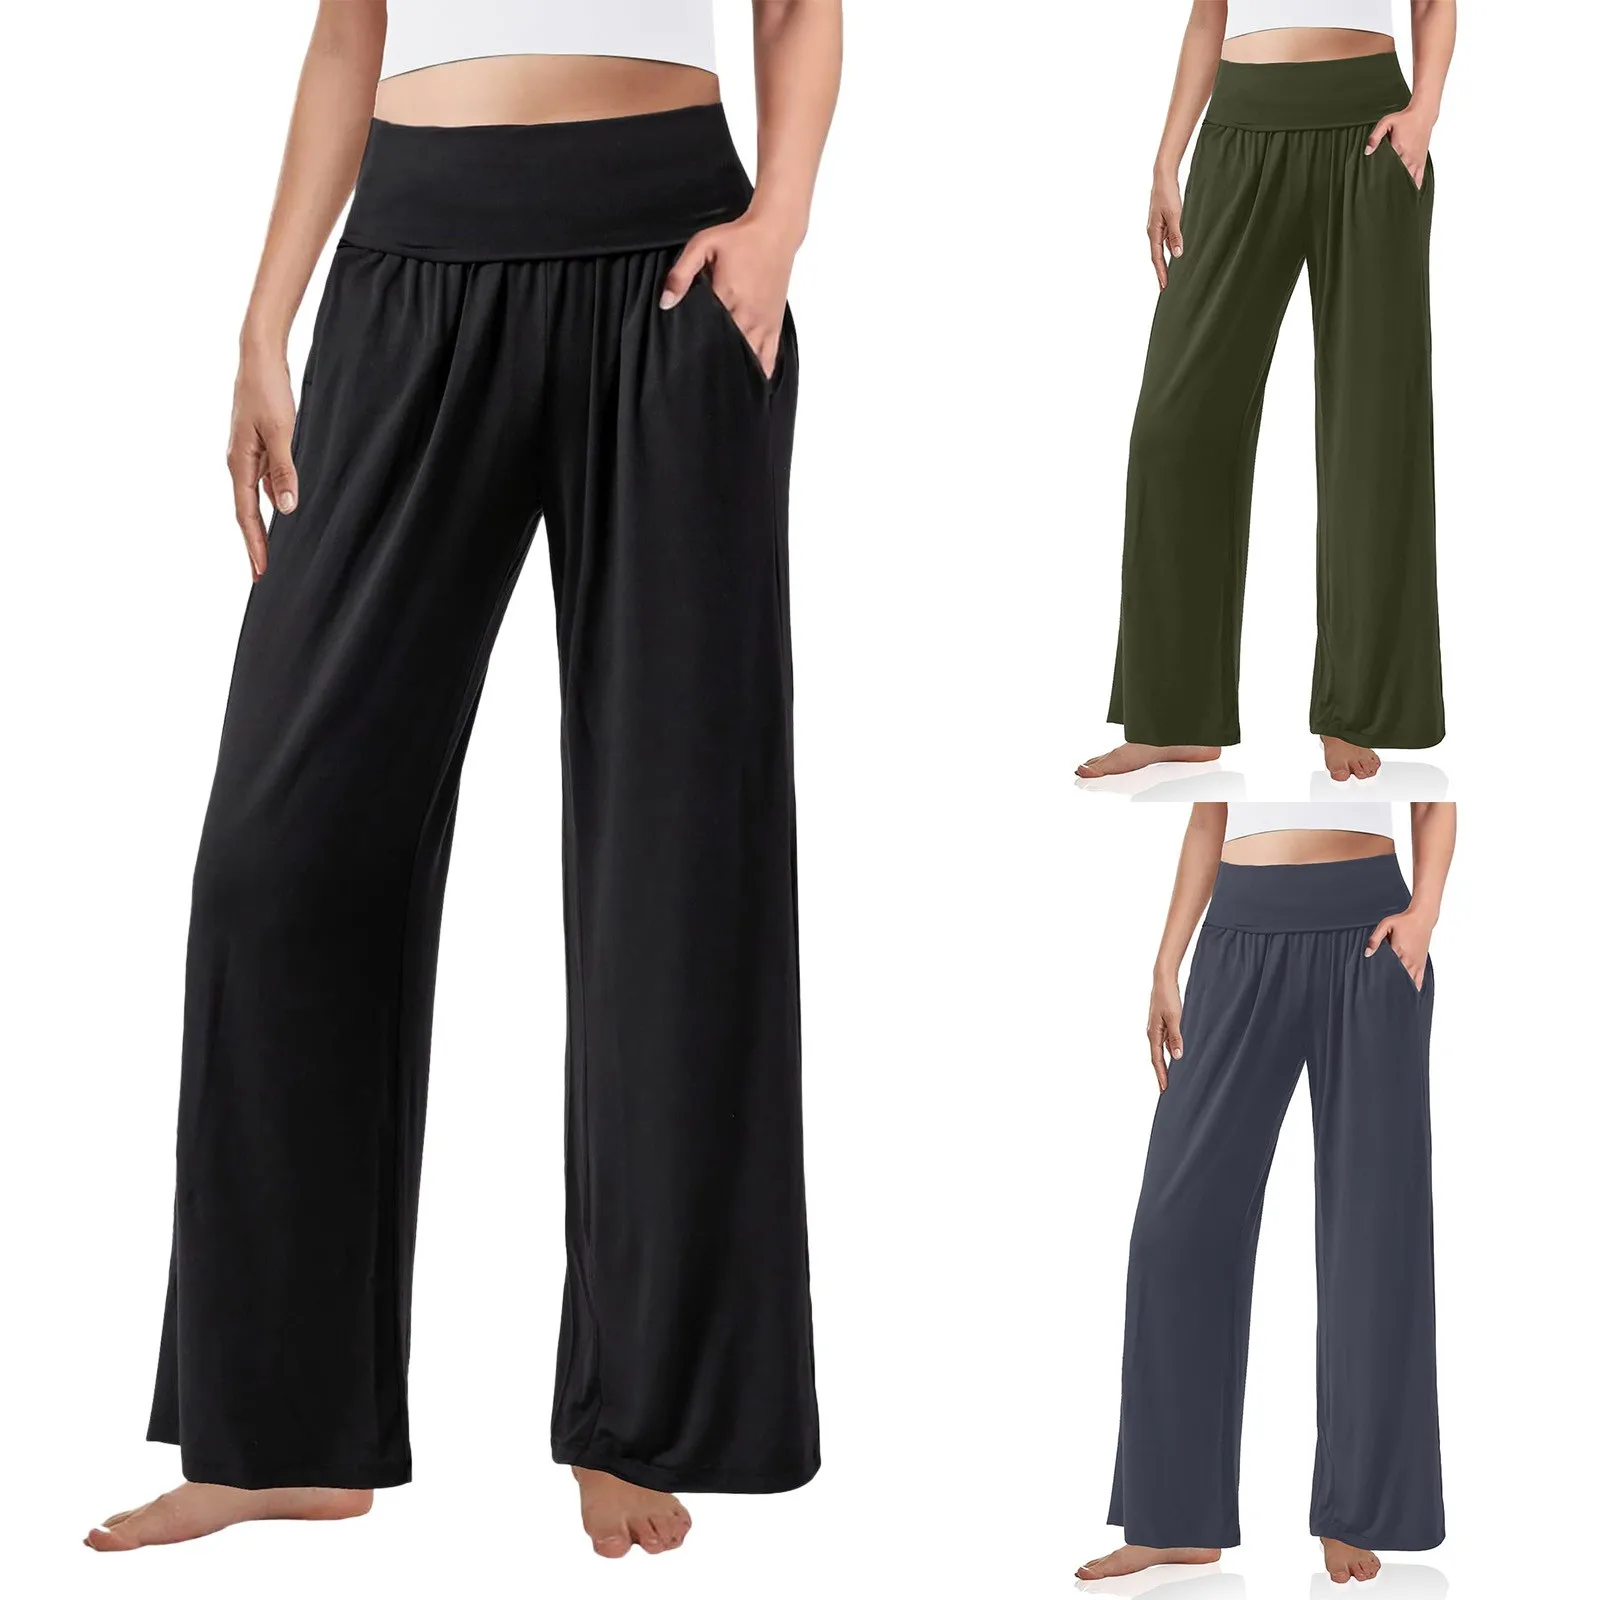 

Женские Штаны Для Йоги, спортивные штаны с широкими штанинами, штаны Палаццо с высокой талией, пижамы для женщин, повседневные строгие брюки для женщин с карманами